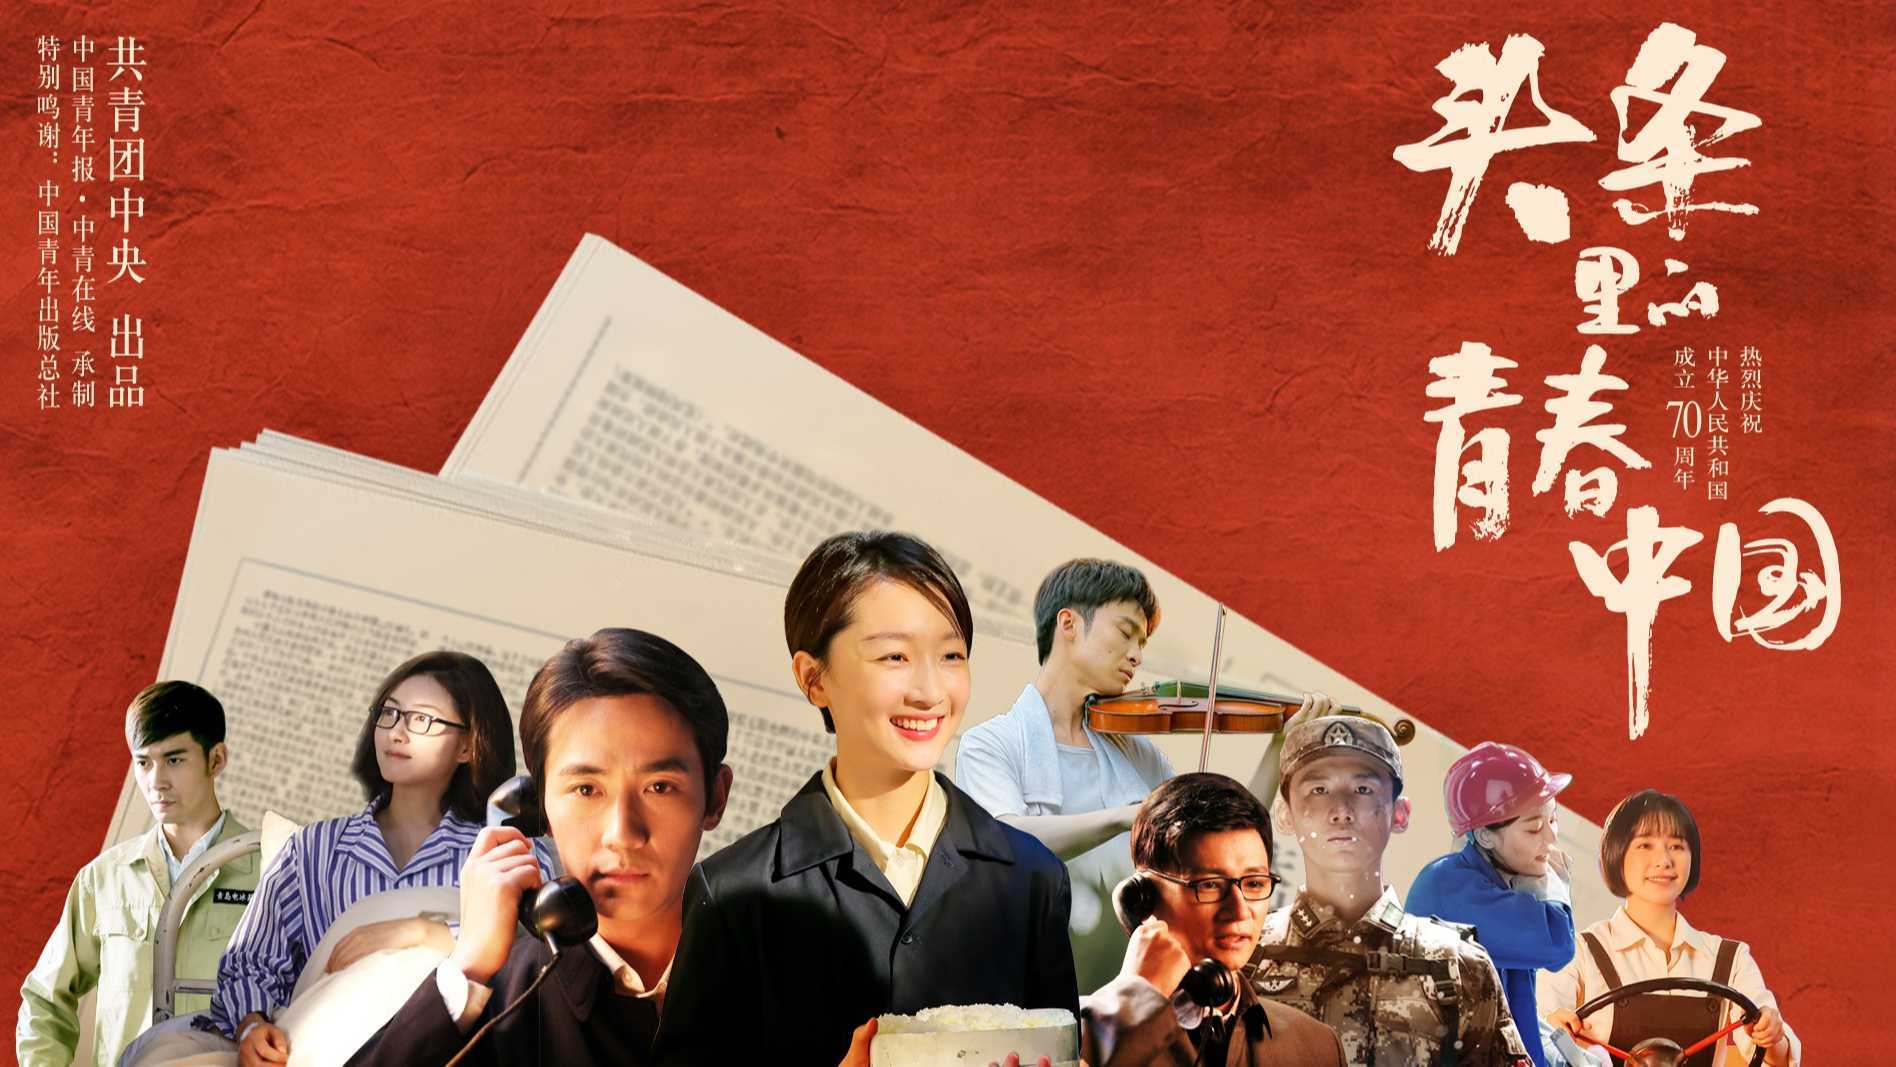 致敬新中国成立70周年的微电影《头条里的青春中国》